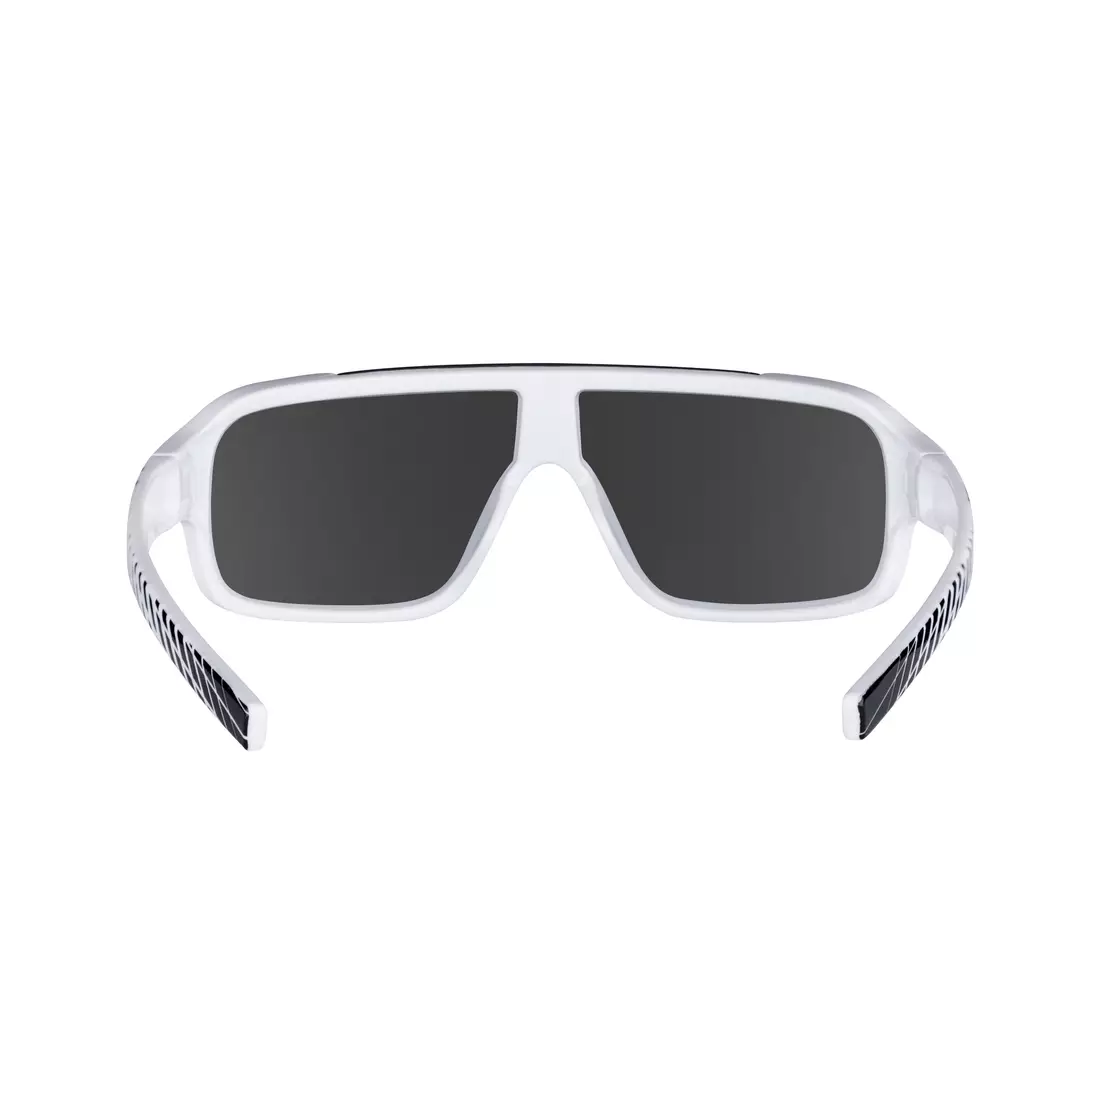 FORCE Damen-/Jugendsonnenbrille CHIC, schwarz-weiß, schwarze Gläser 90962